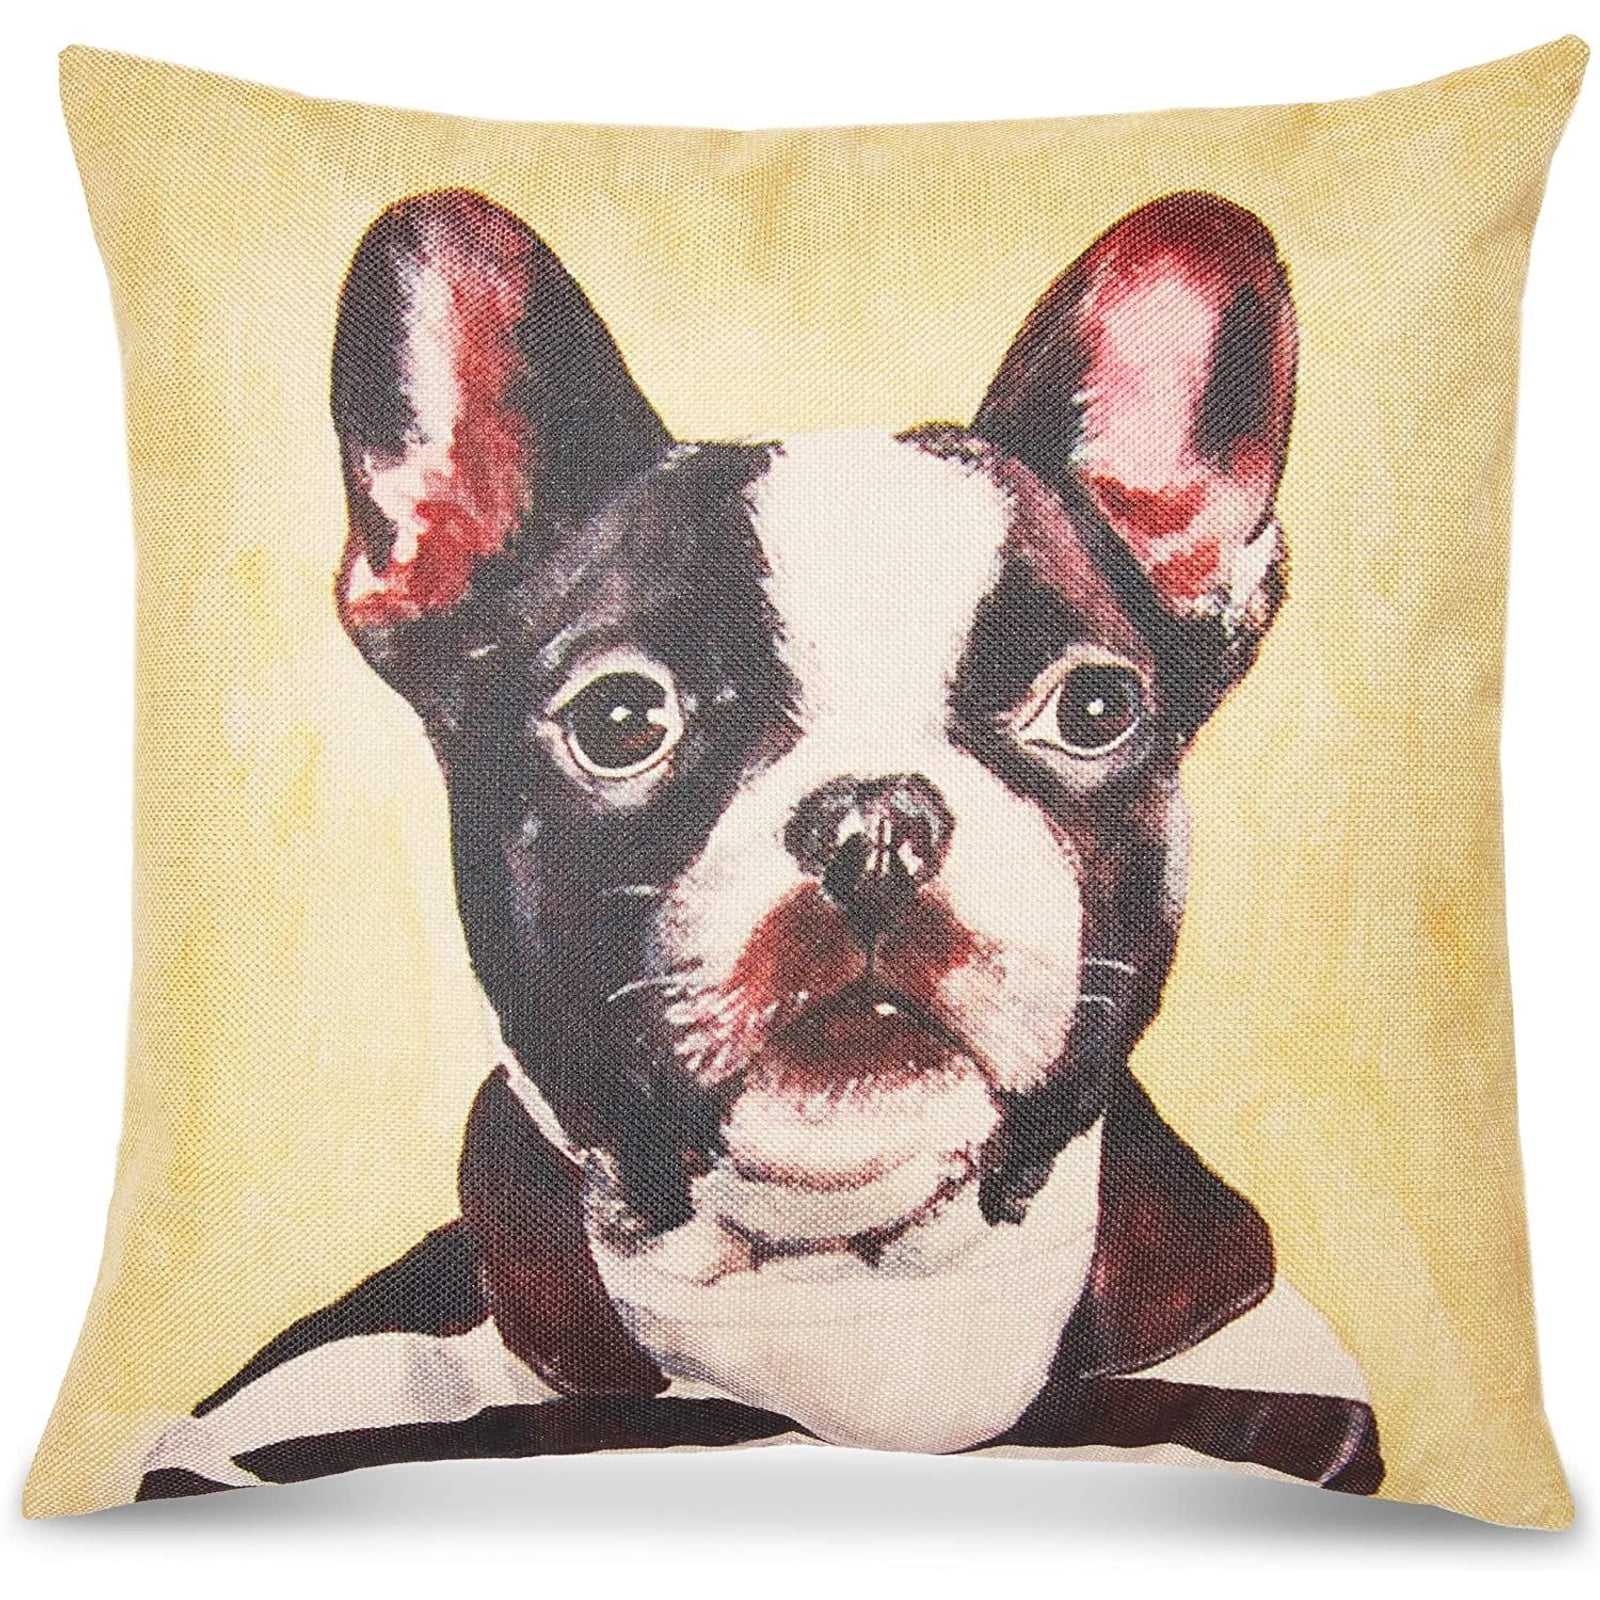 Cute Pet Dog Animal Cotton Linen Throw Pillow Case Cushion Cover Home Decor 18" 